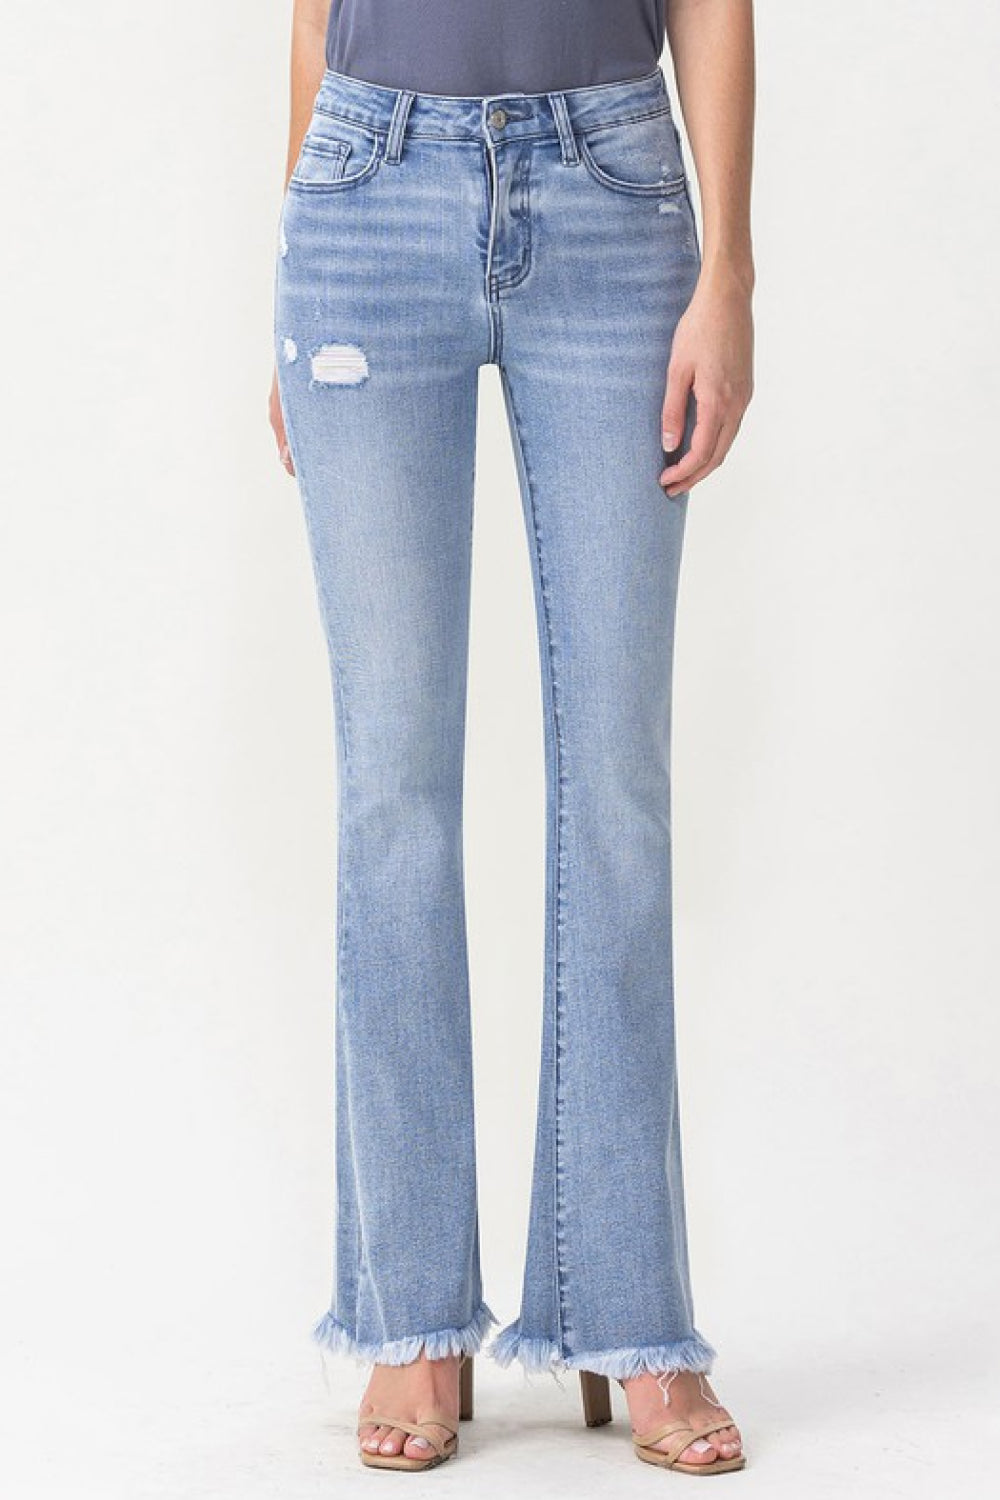 Lovervet Full Size Evie High Rise Fray Flare Jeans